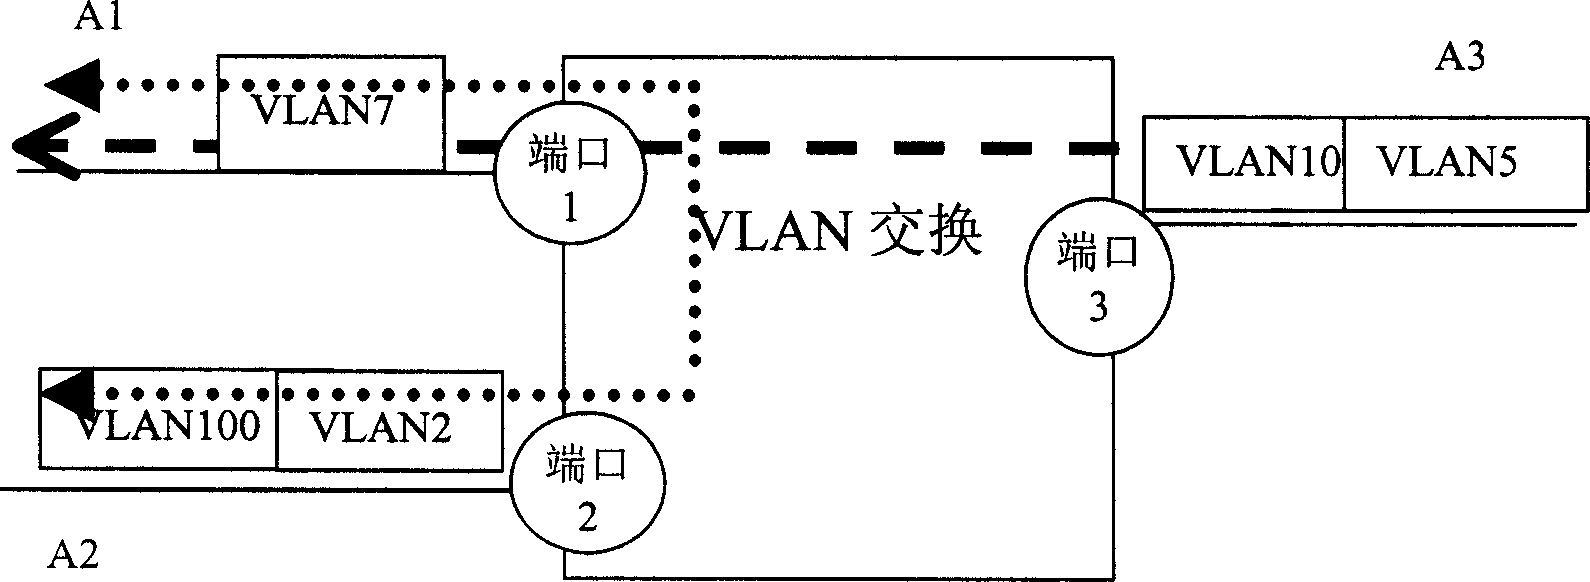 Method of multilayer VLAN switching